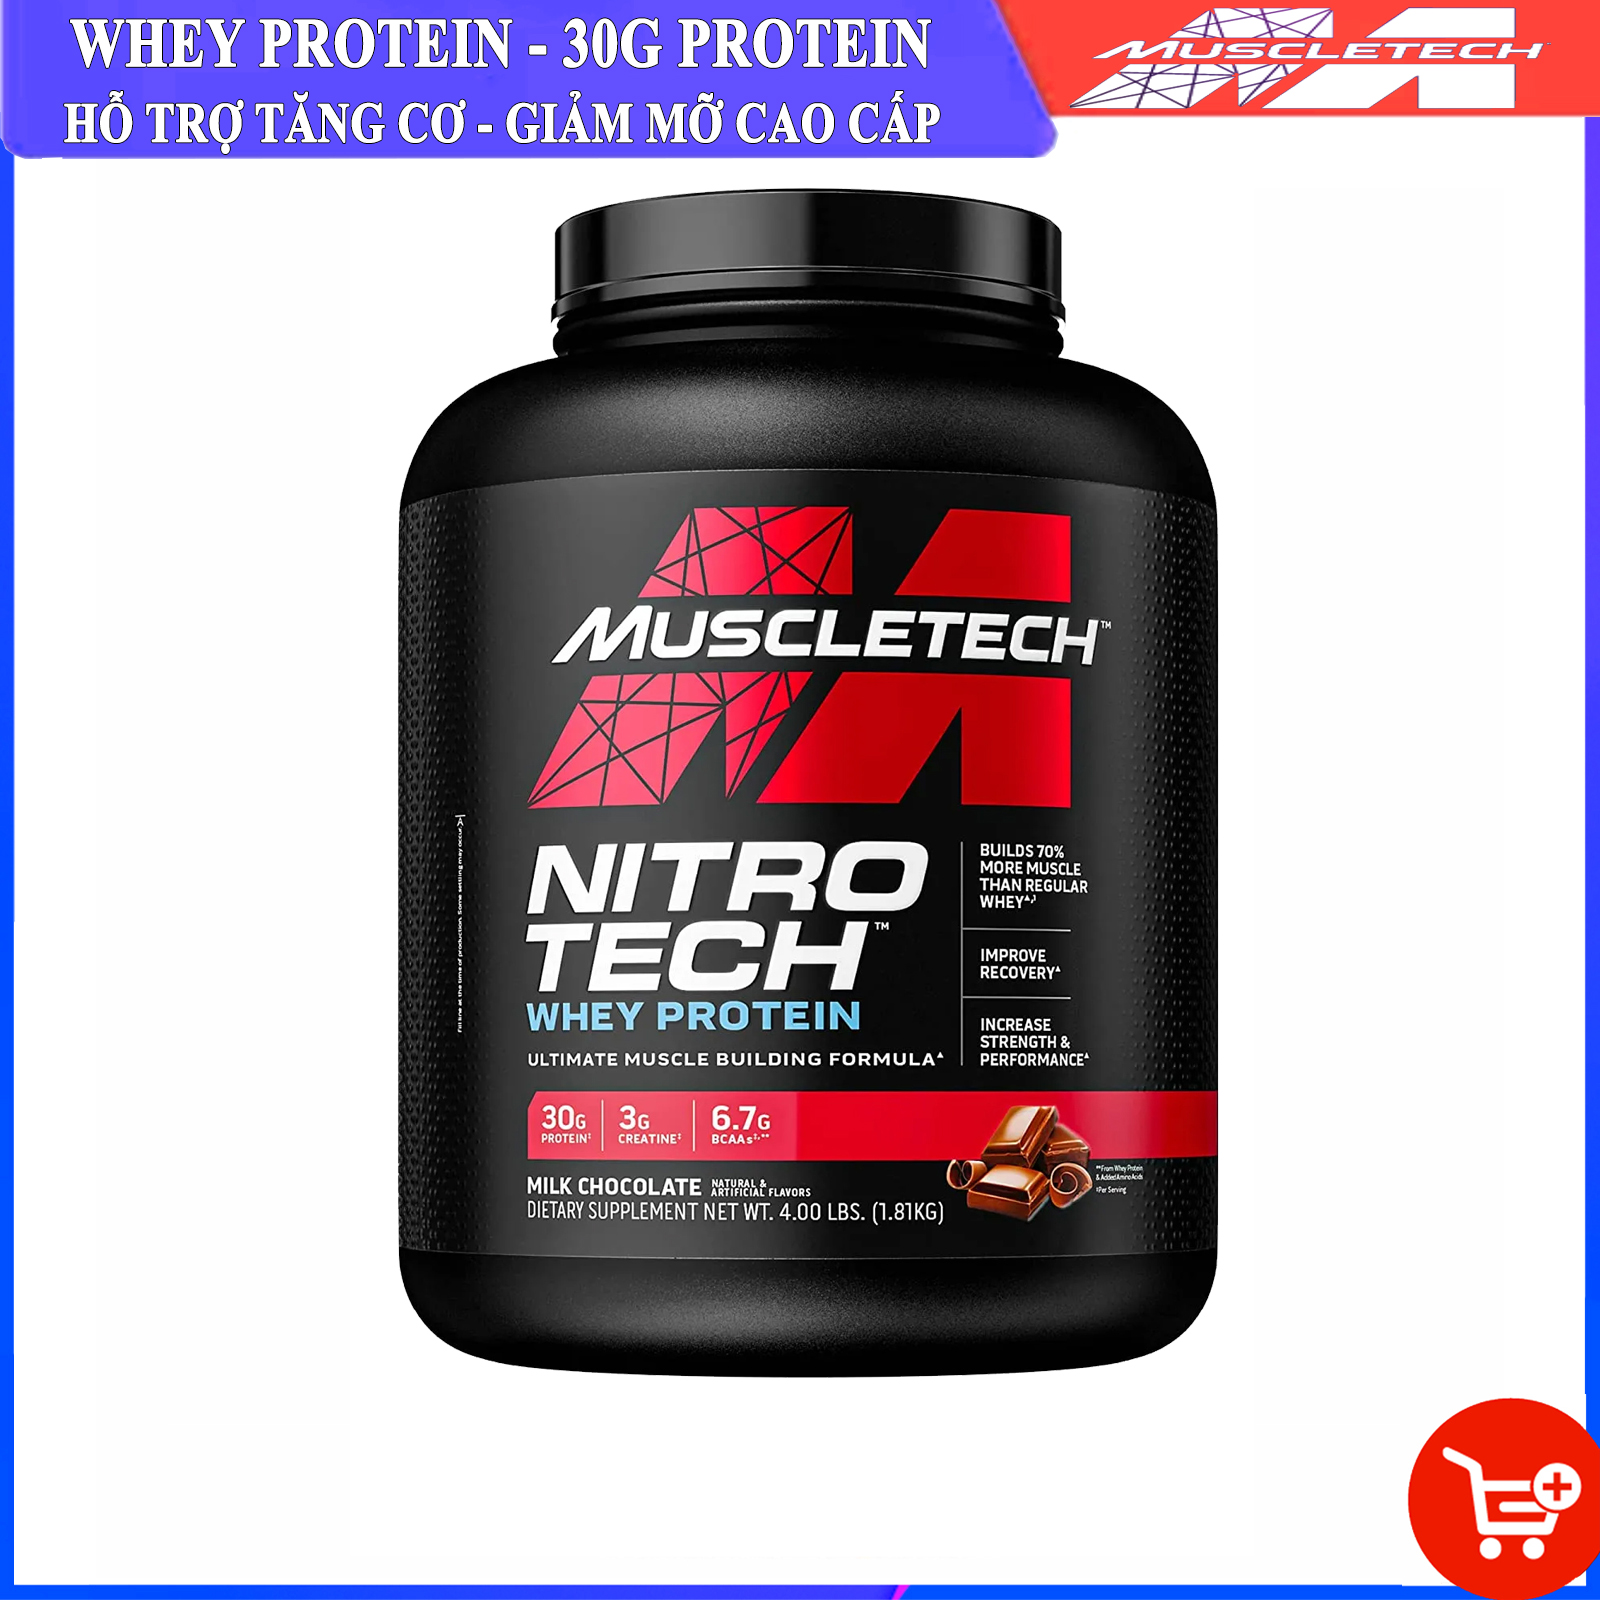 Sữa tăng cơ cao cấp Whey Protein Nitro Tech của MuscleTech hộp 1.8kg hỗ trợ tăng cơ tăng sức bền sức mạnh đốt mỡ giảm cân cho người tập gym và chơi thể thao - thuc pham chuc nang thumbnail